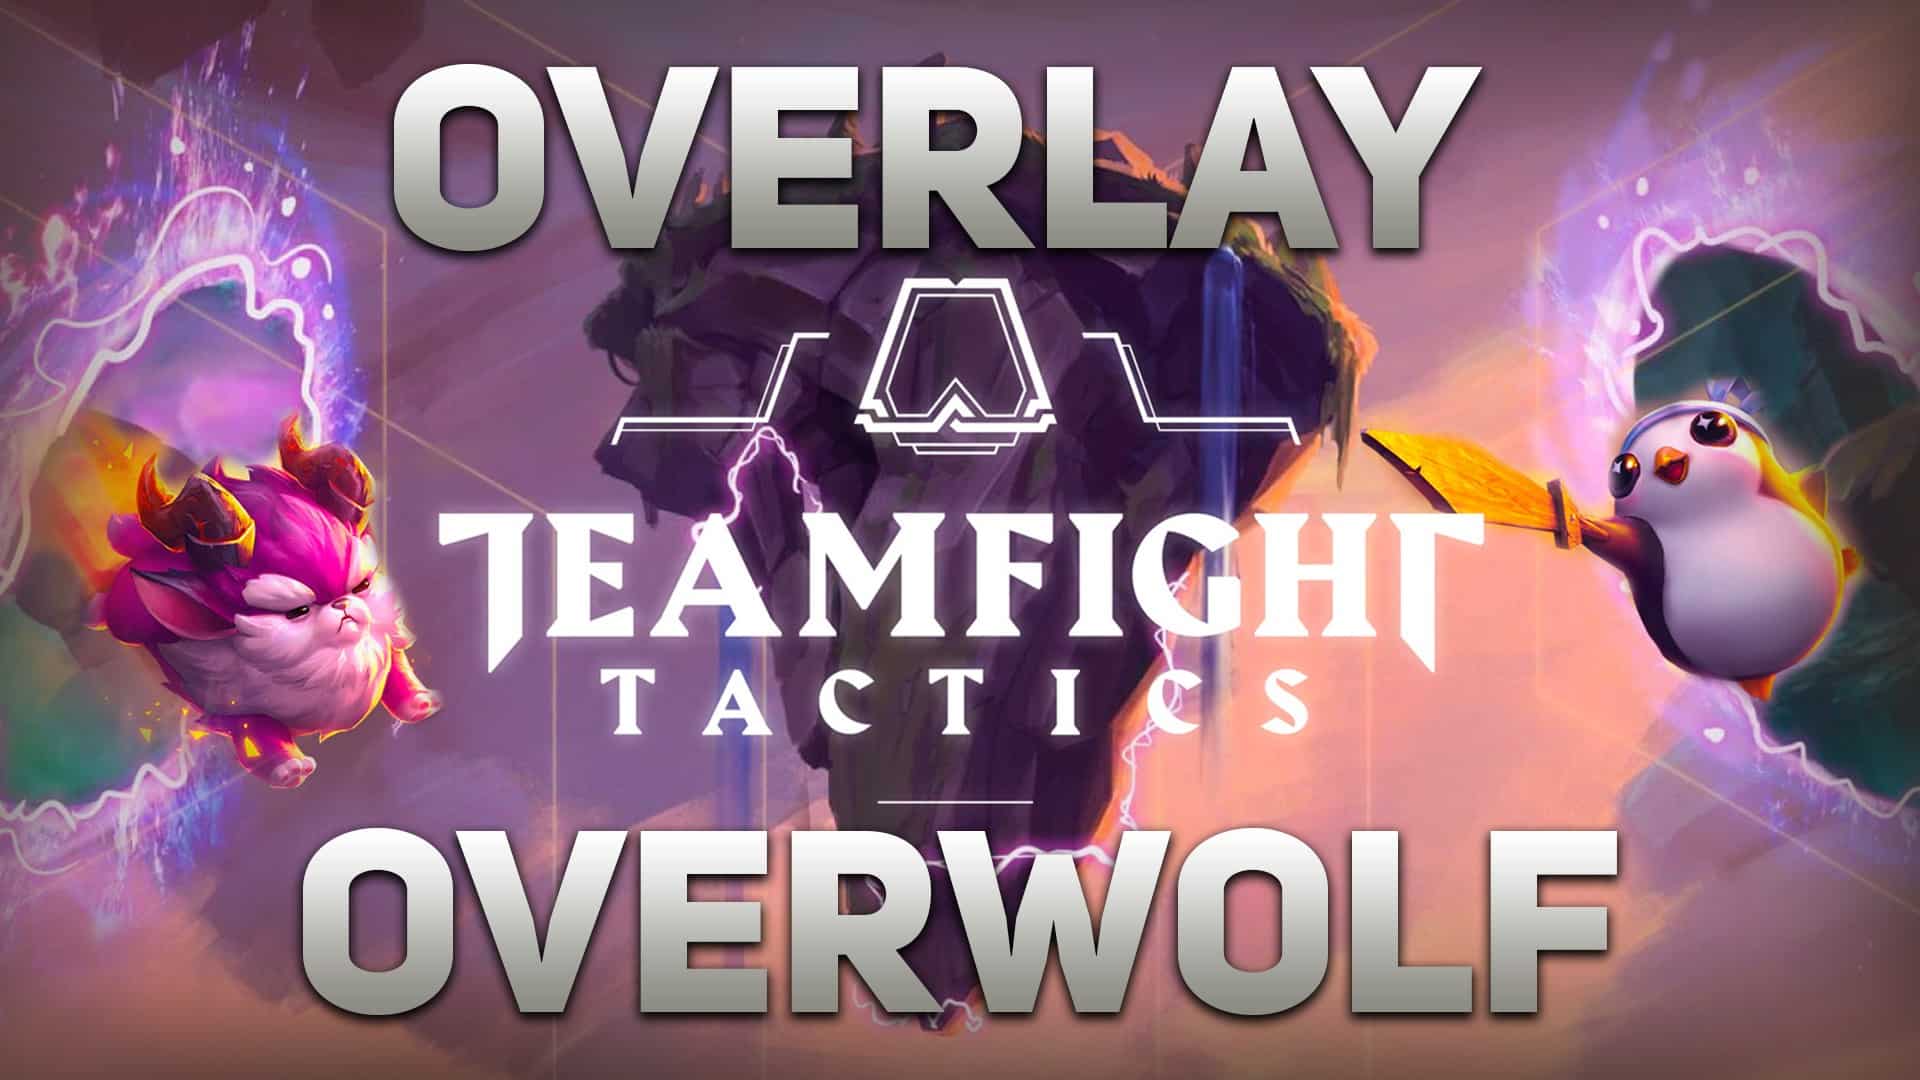 Best Teamfight Tactics overlays - Dot Esports